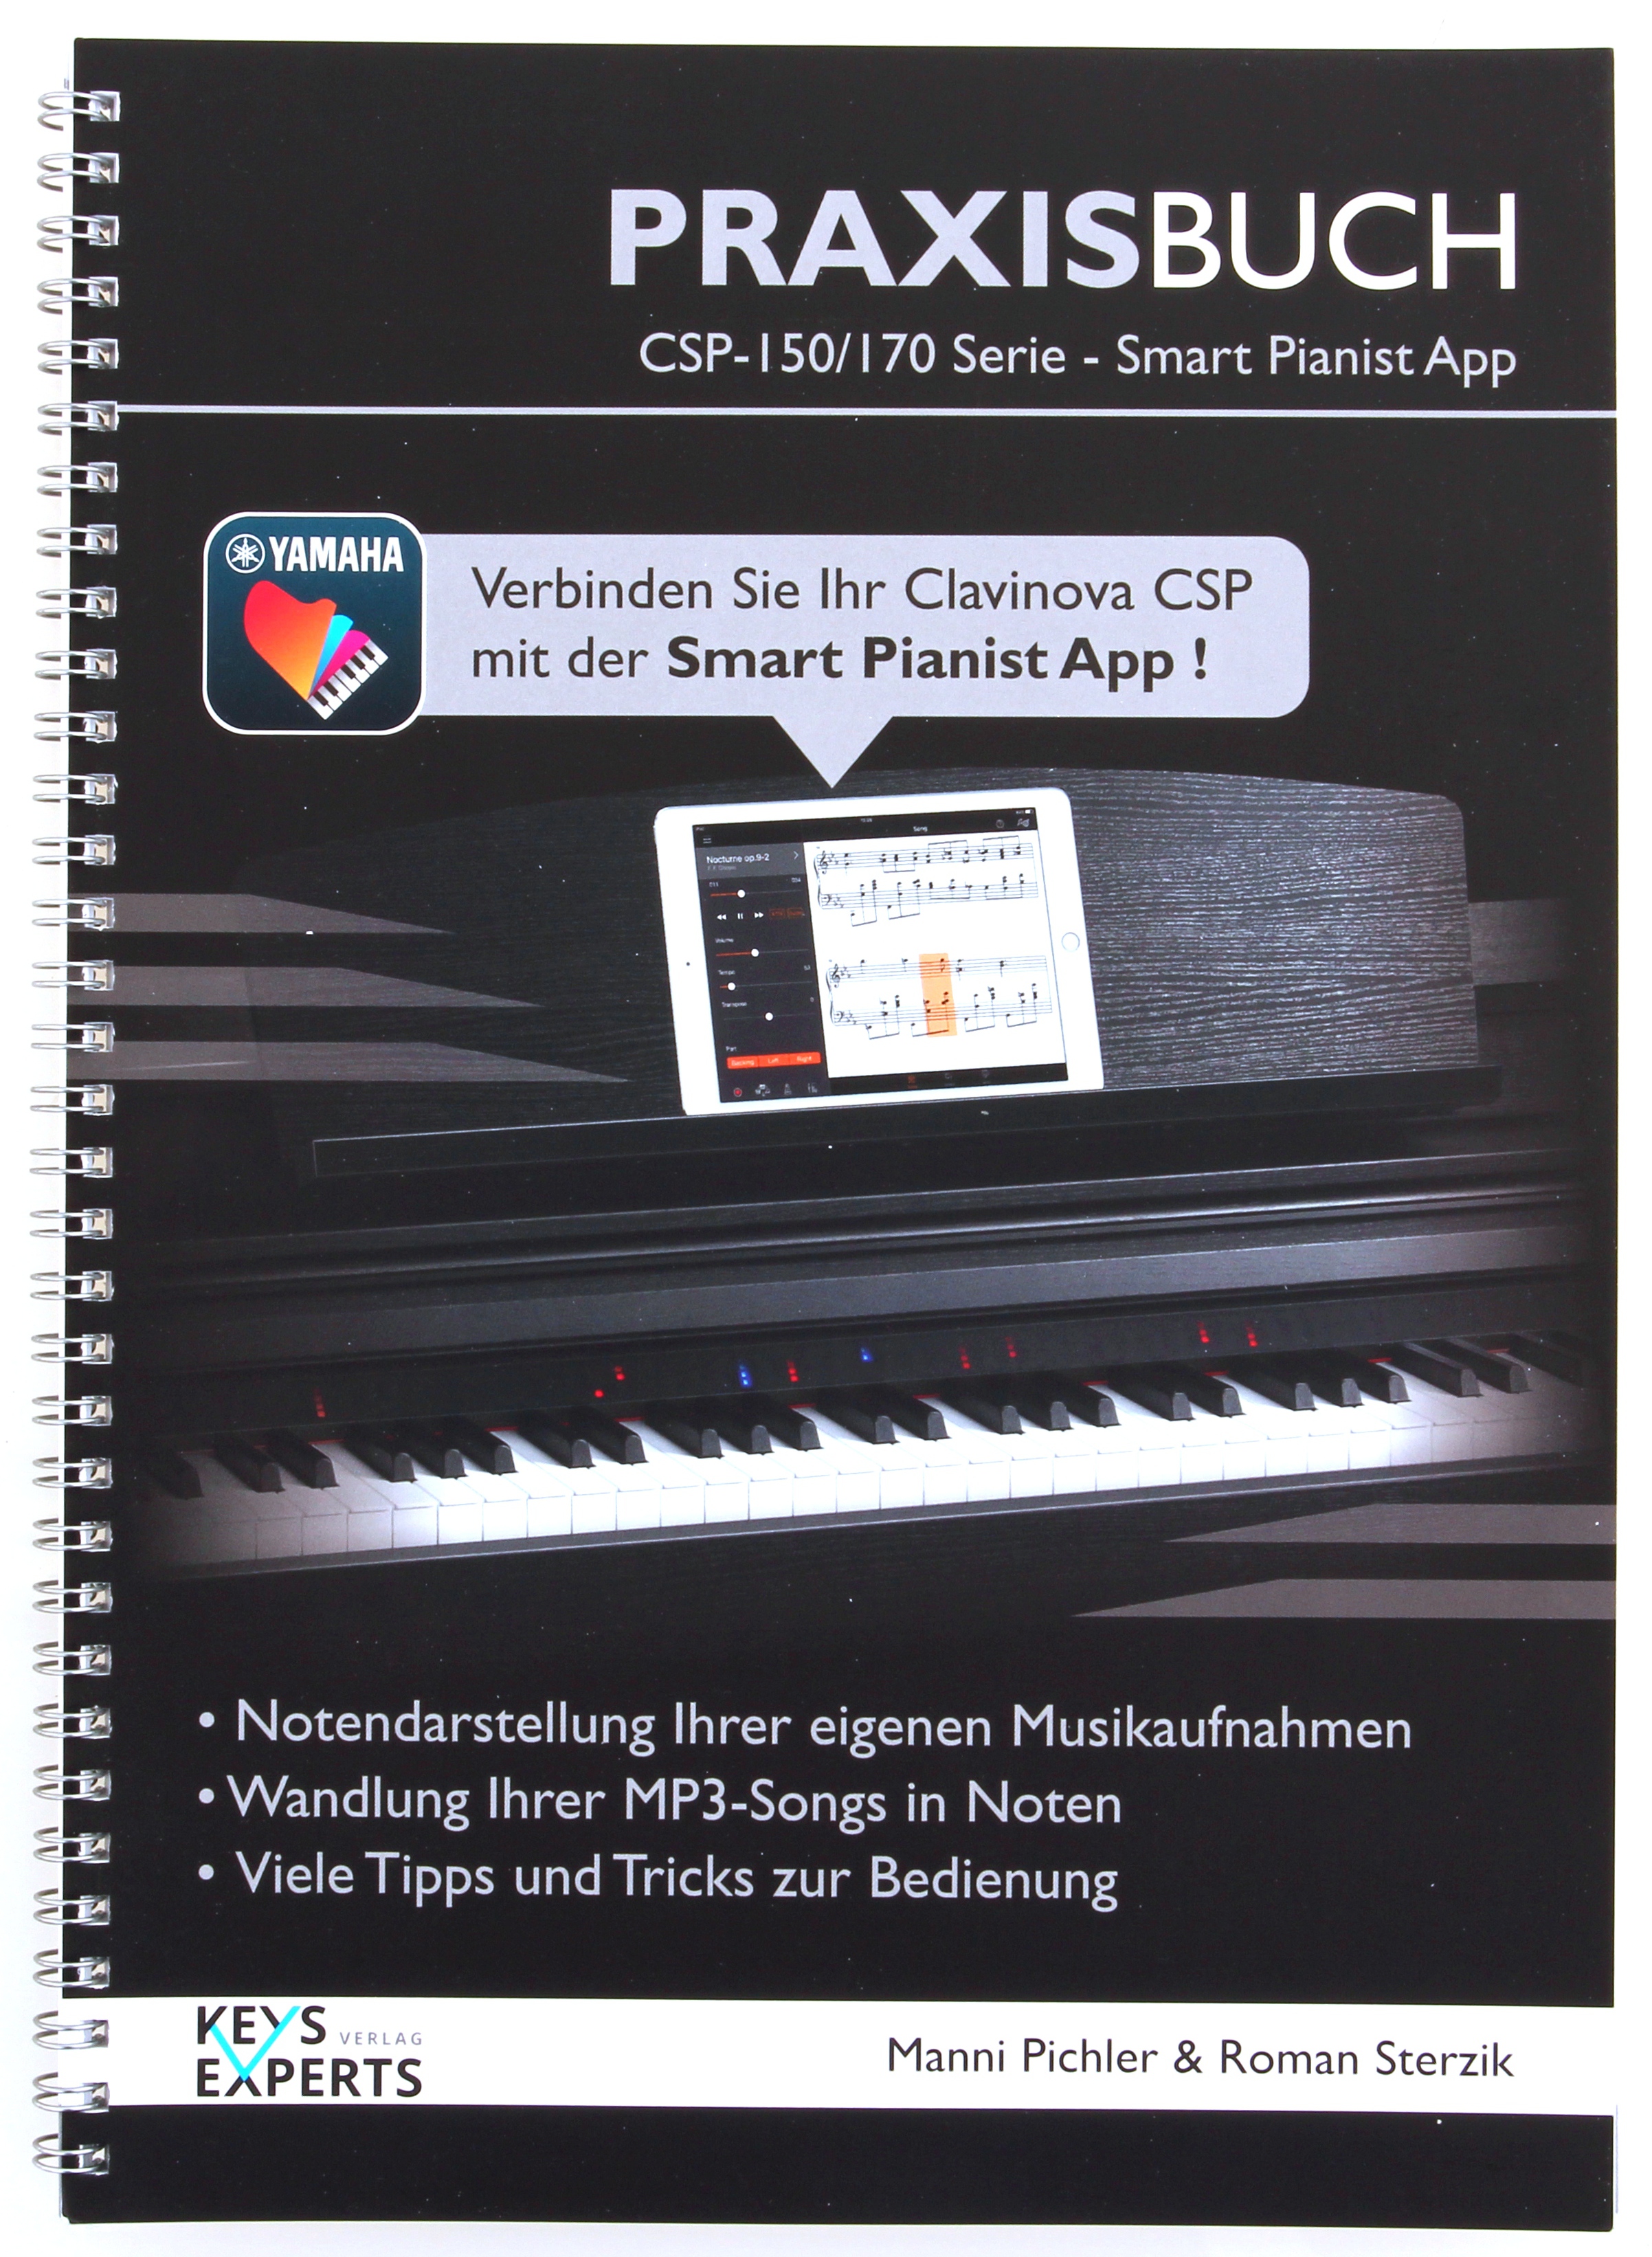 Yamaha Praxisbuch für CSP150 und 170